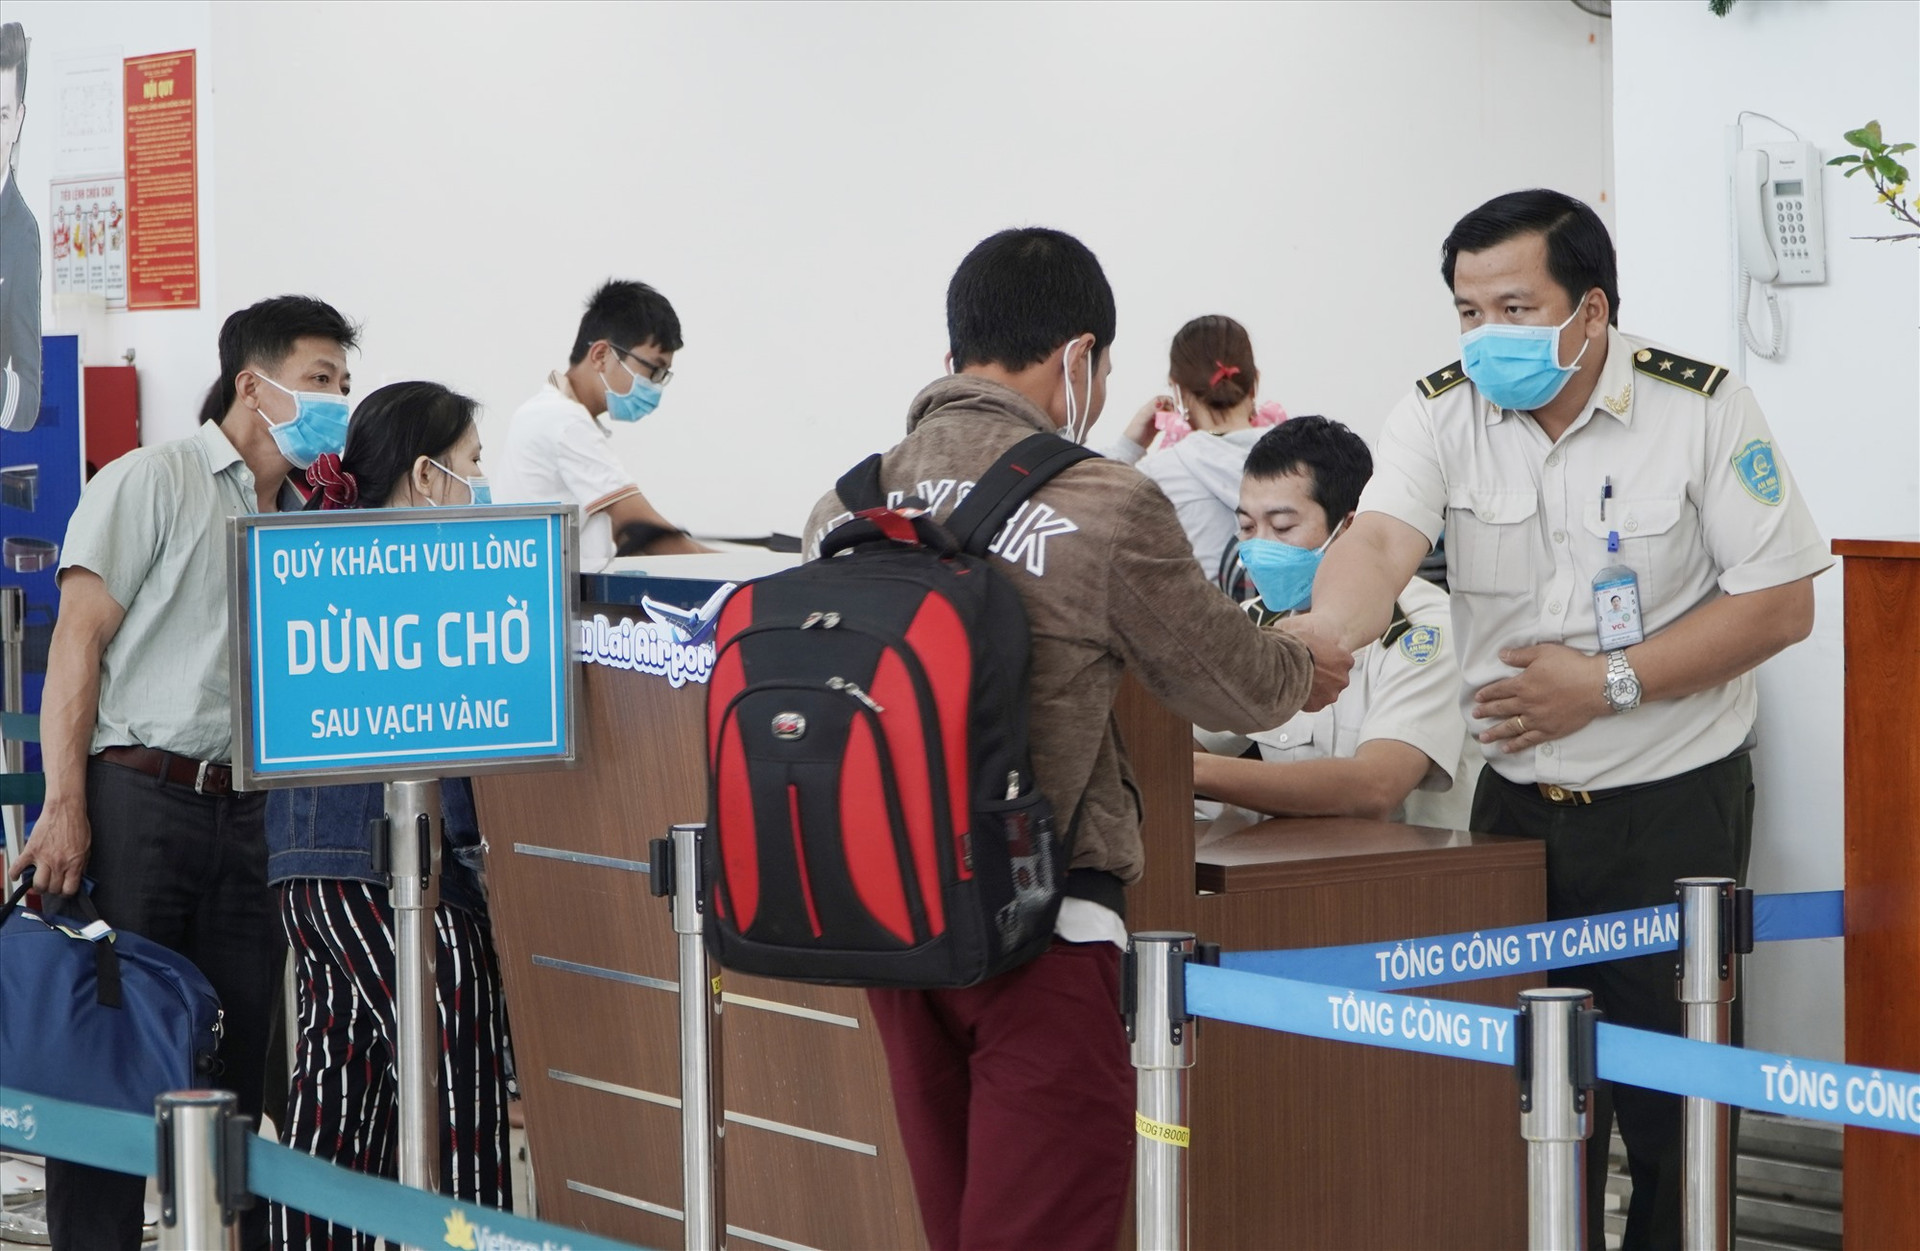 Càng hàng không Chu Lai đang đề xuất được hỗ trợ máy đo thân nhiệt để kịp thời phát hiện và cách ly hành khách nghi nhiễm bệnh. Ảnh: VINH THẮNG